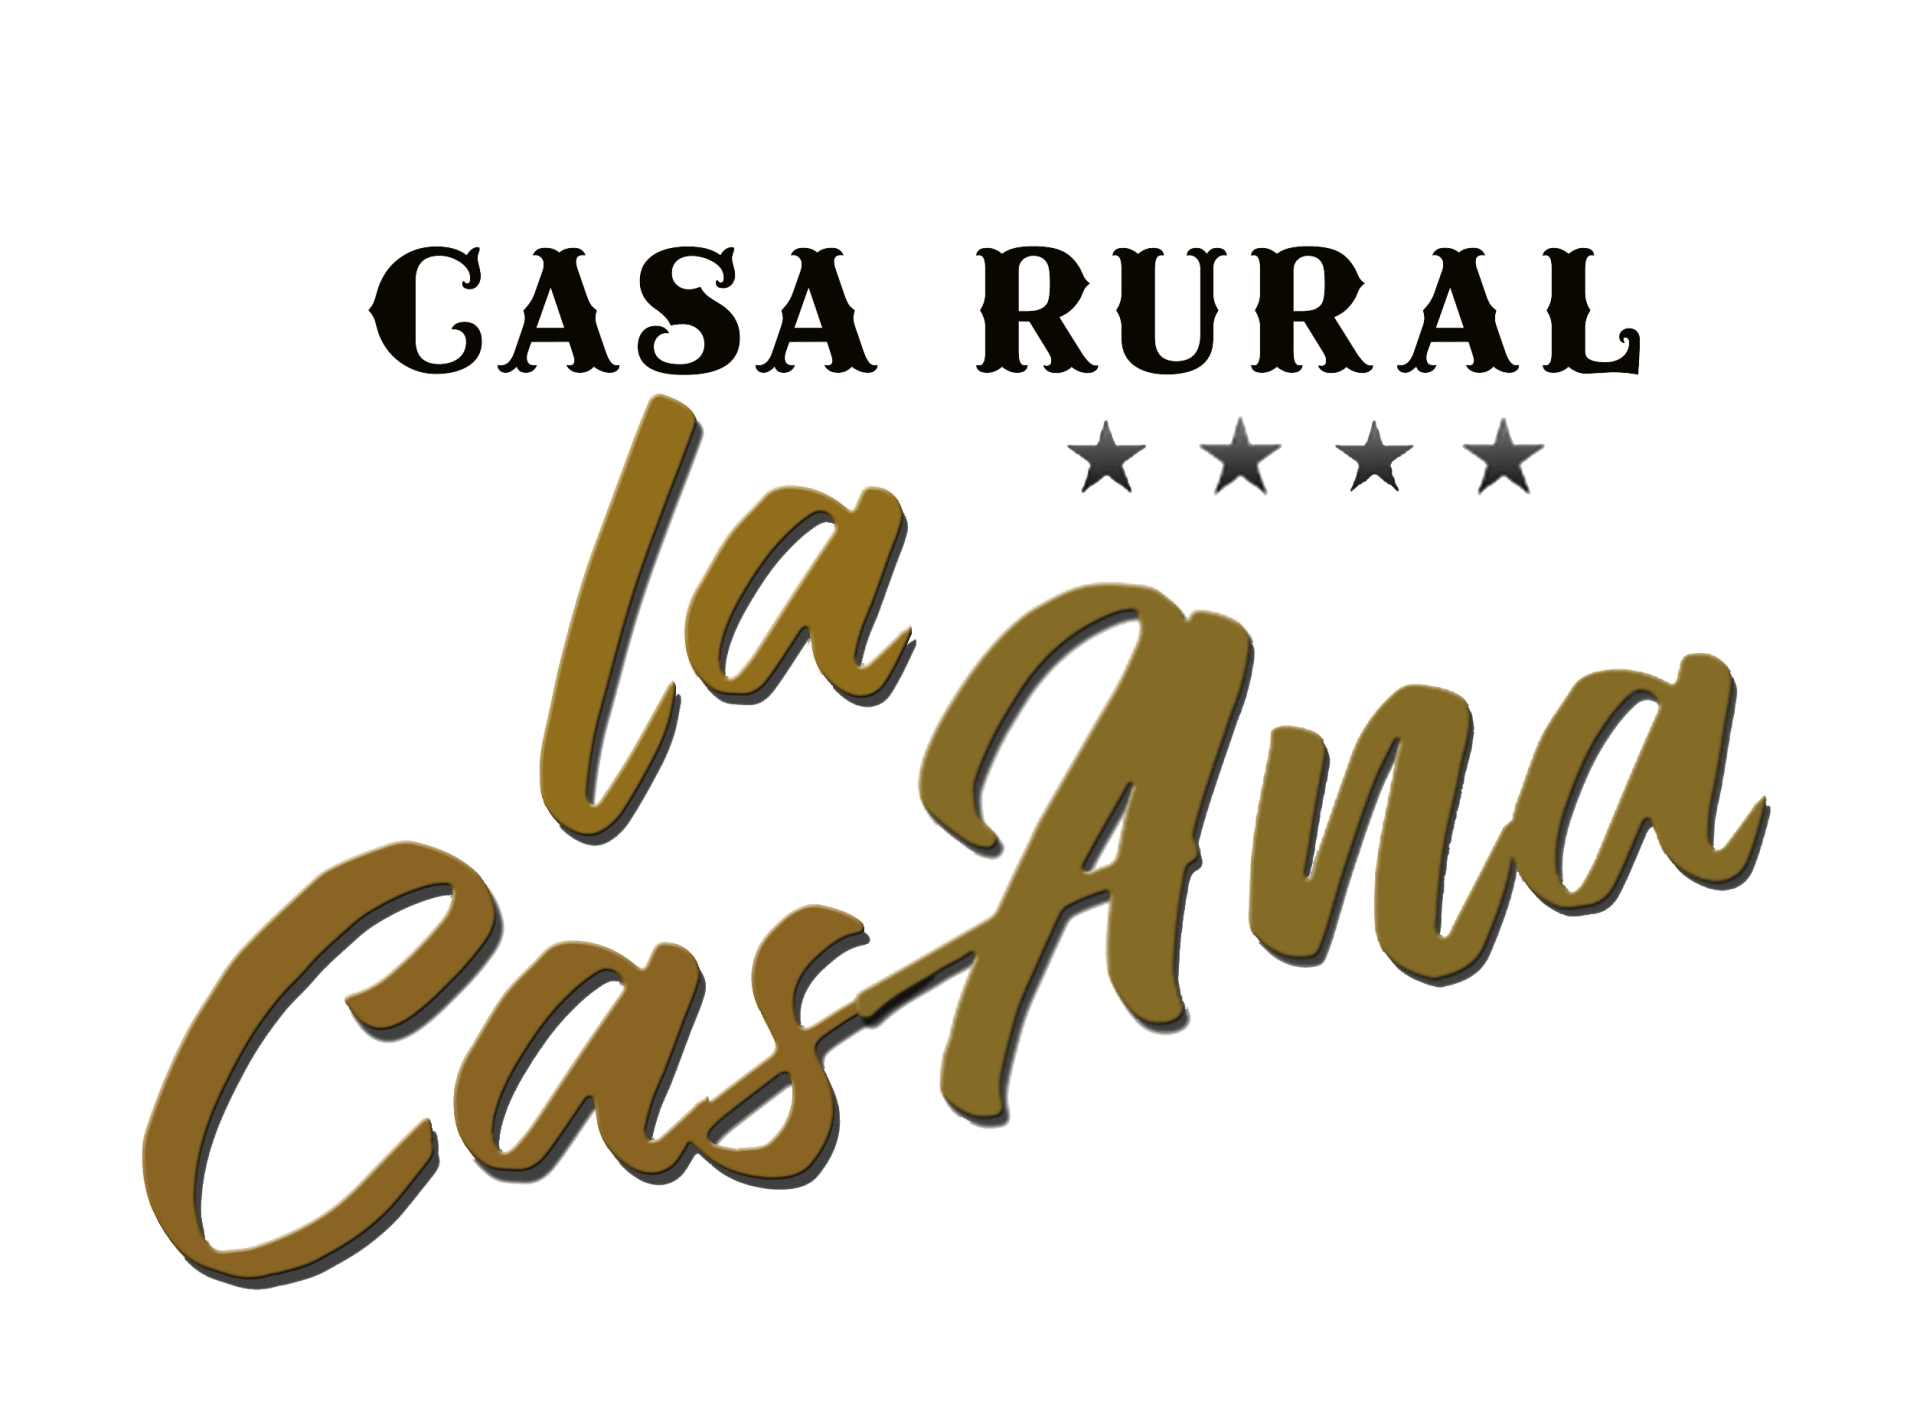 Casa Rural la CasAna